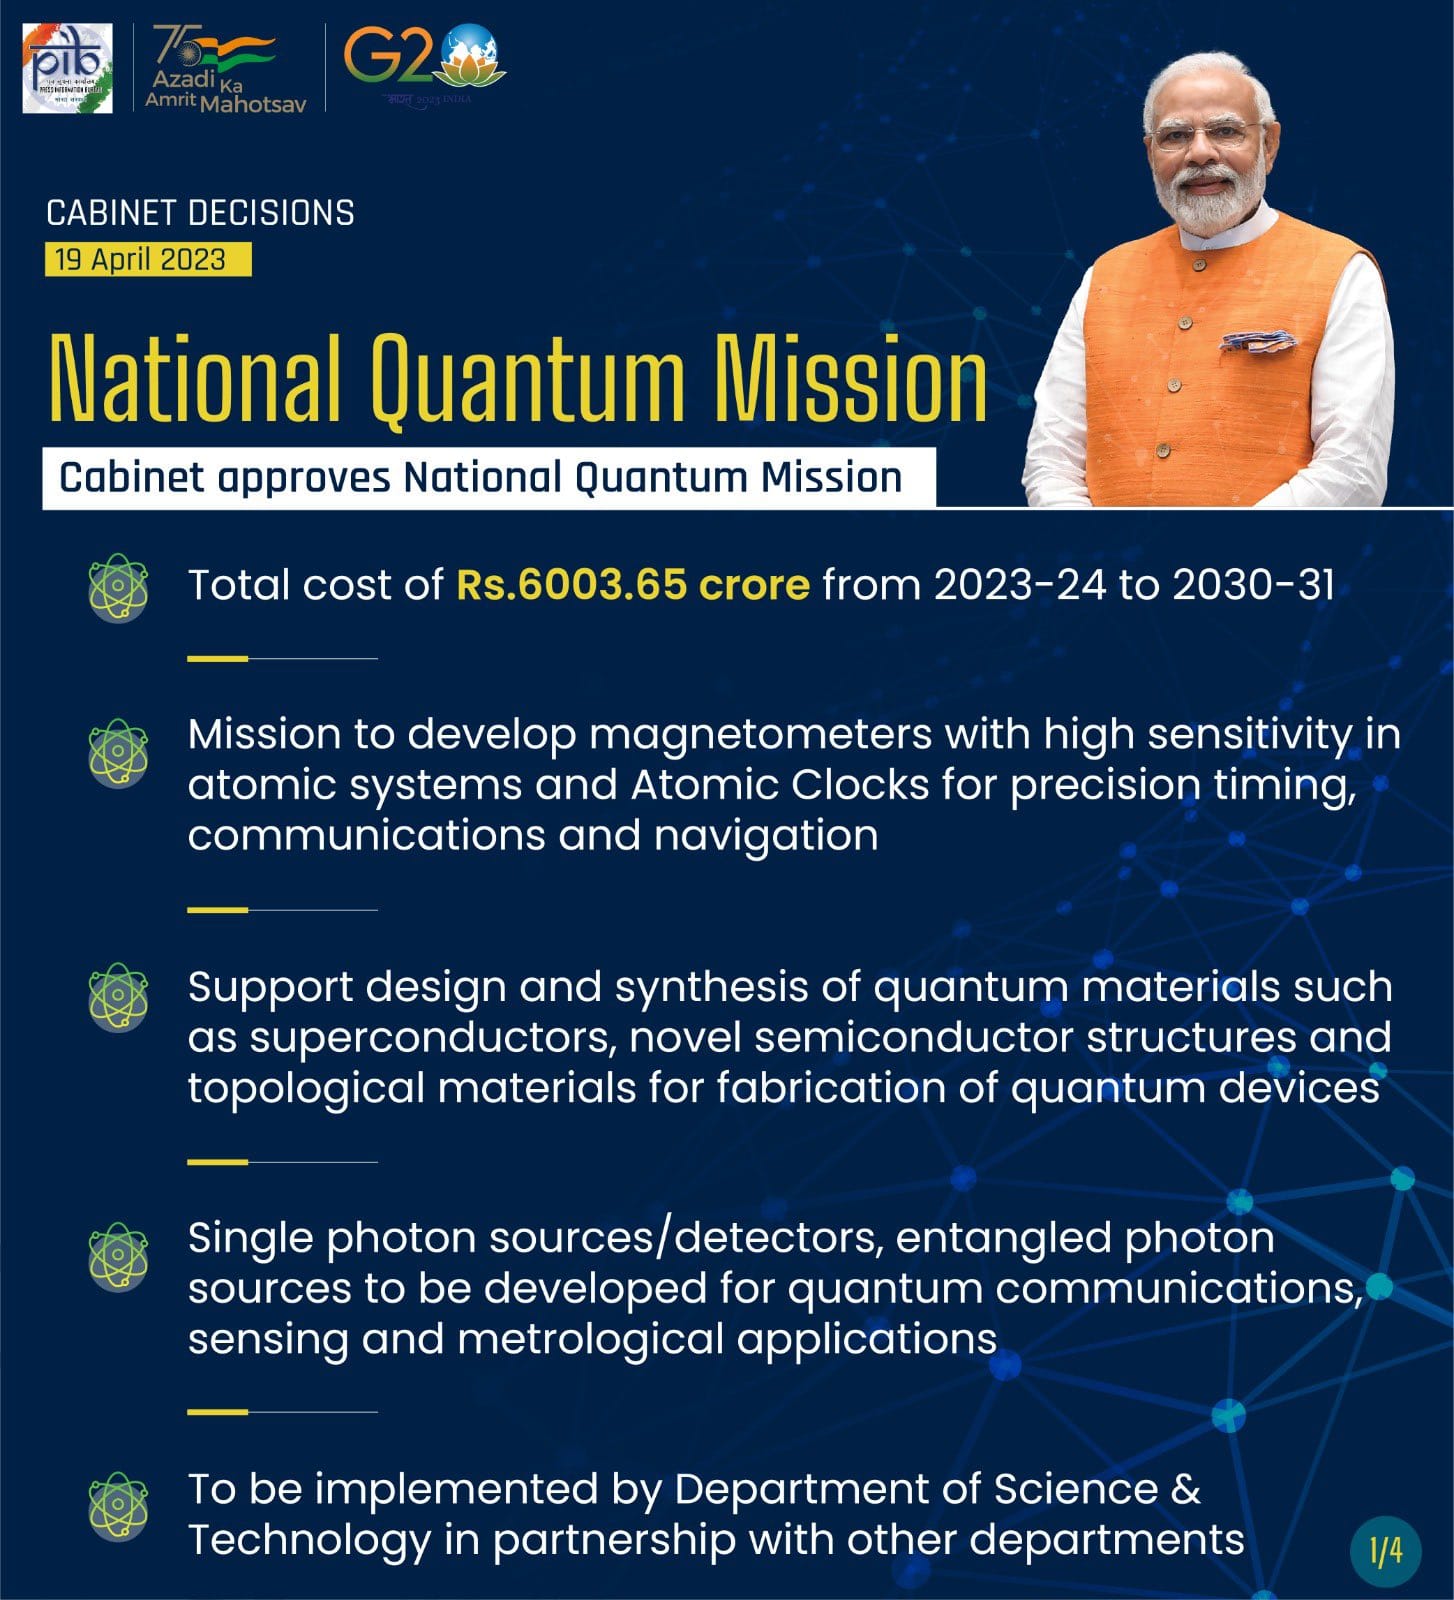 वैज्ञानिक और औद्योगिक शोध-विकास पर खर्च होंगे 6,000 करोड़, राष्ट्रीय क्वांटम मिशन से साकार होगा आत्मनिर्भर भारत का सपना